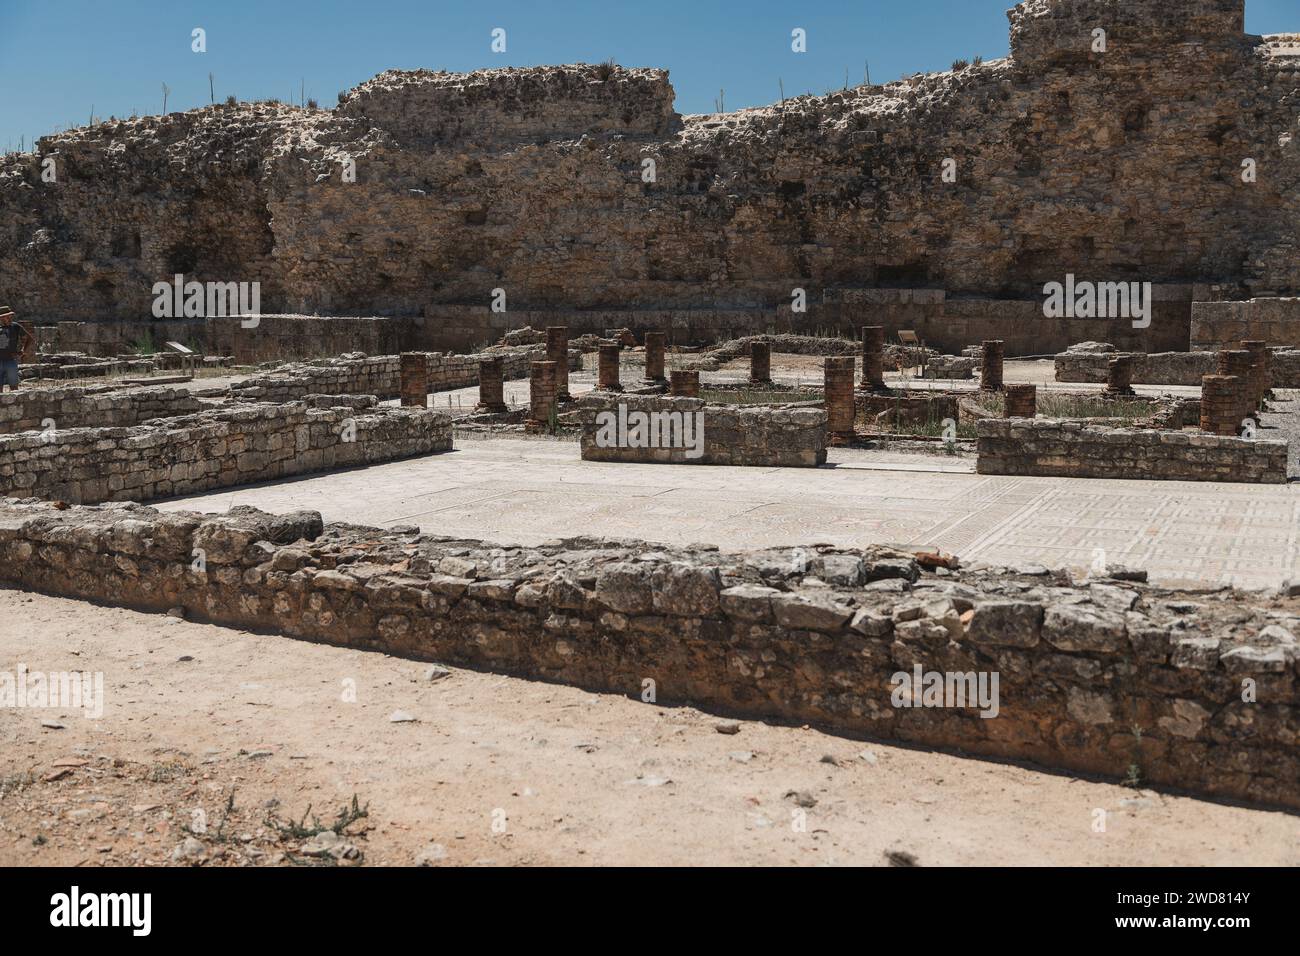 Immagine delle rovine romane a Conimbriga, Portogallo. Elementi storici trovati nel sito in lavori archeologici. Foto Stock